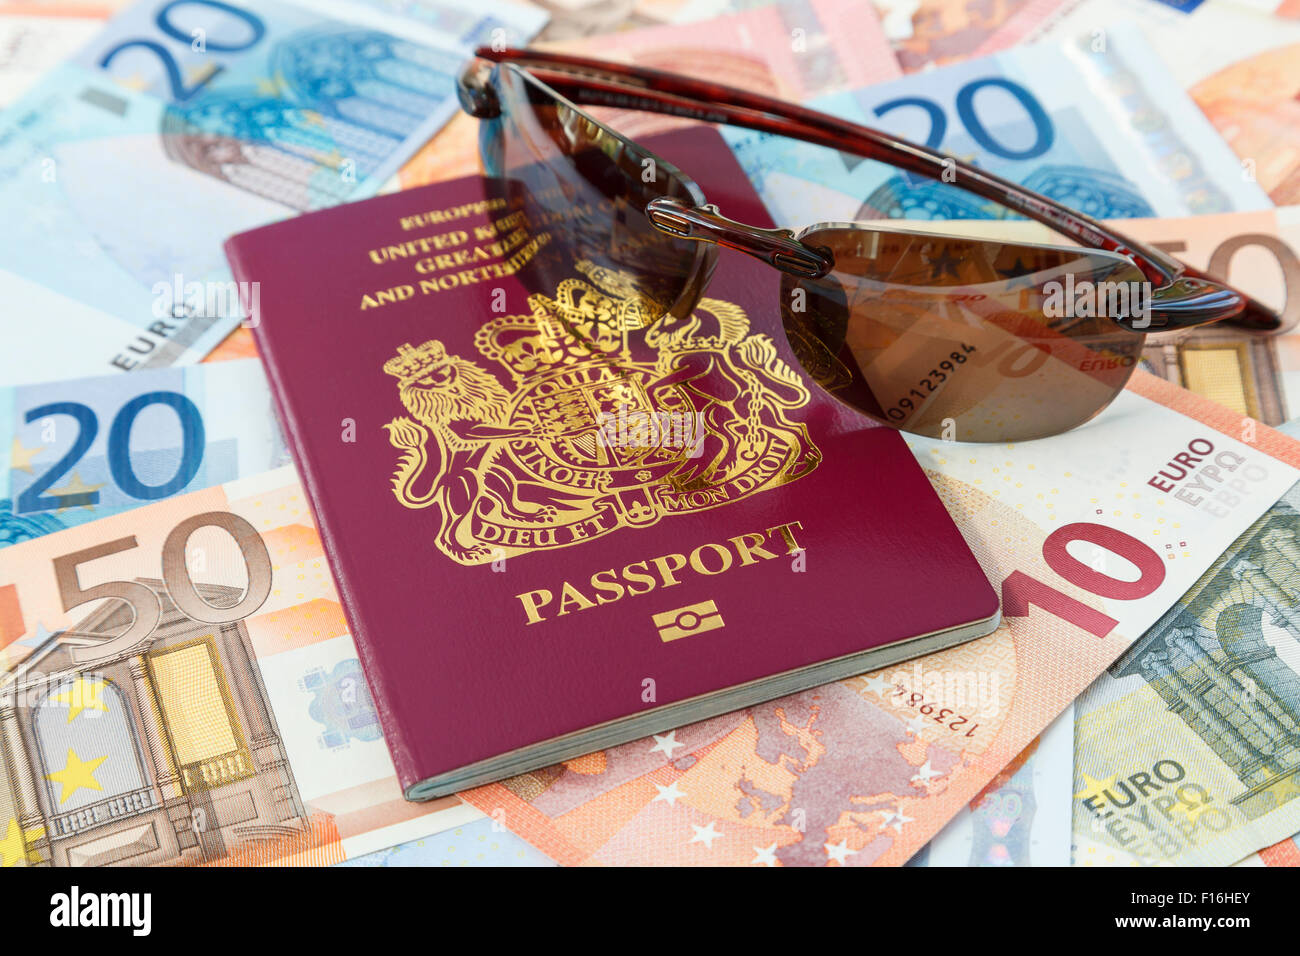 Reisen Dinge mit einem britischen Reisepass Währung Euro und Sonnenbrillen für Reisen in die Länder der Eurozone aus Großbritannien. Europäische geld Brexit Konzept Stockfoto